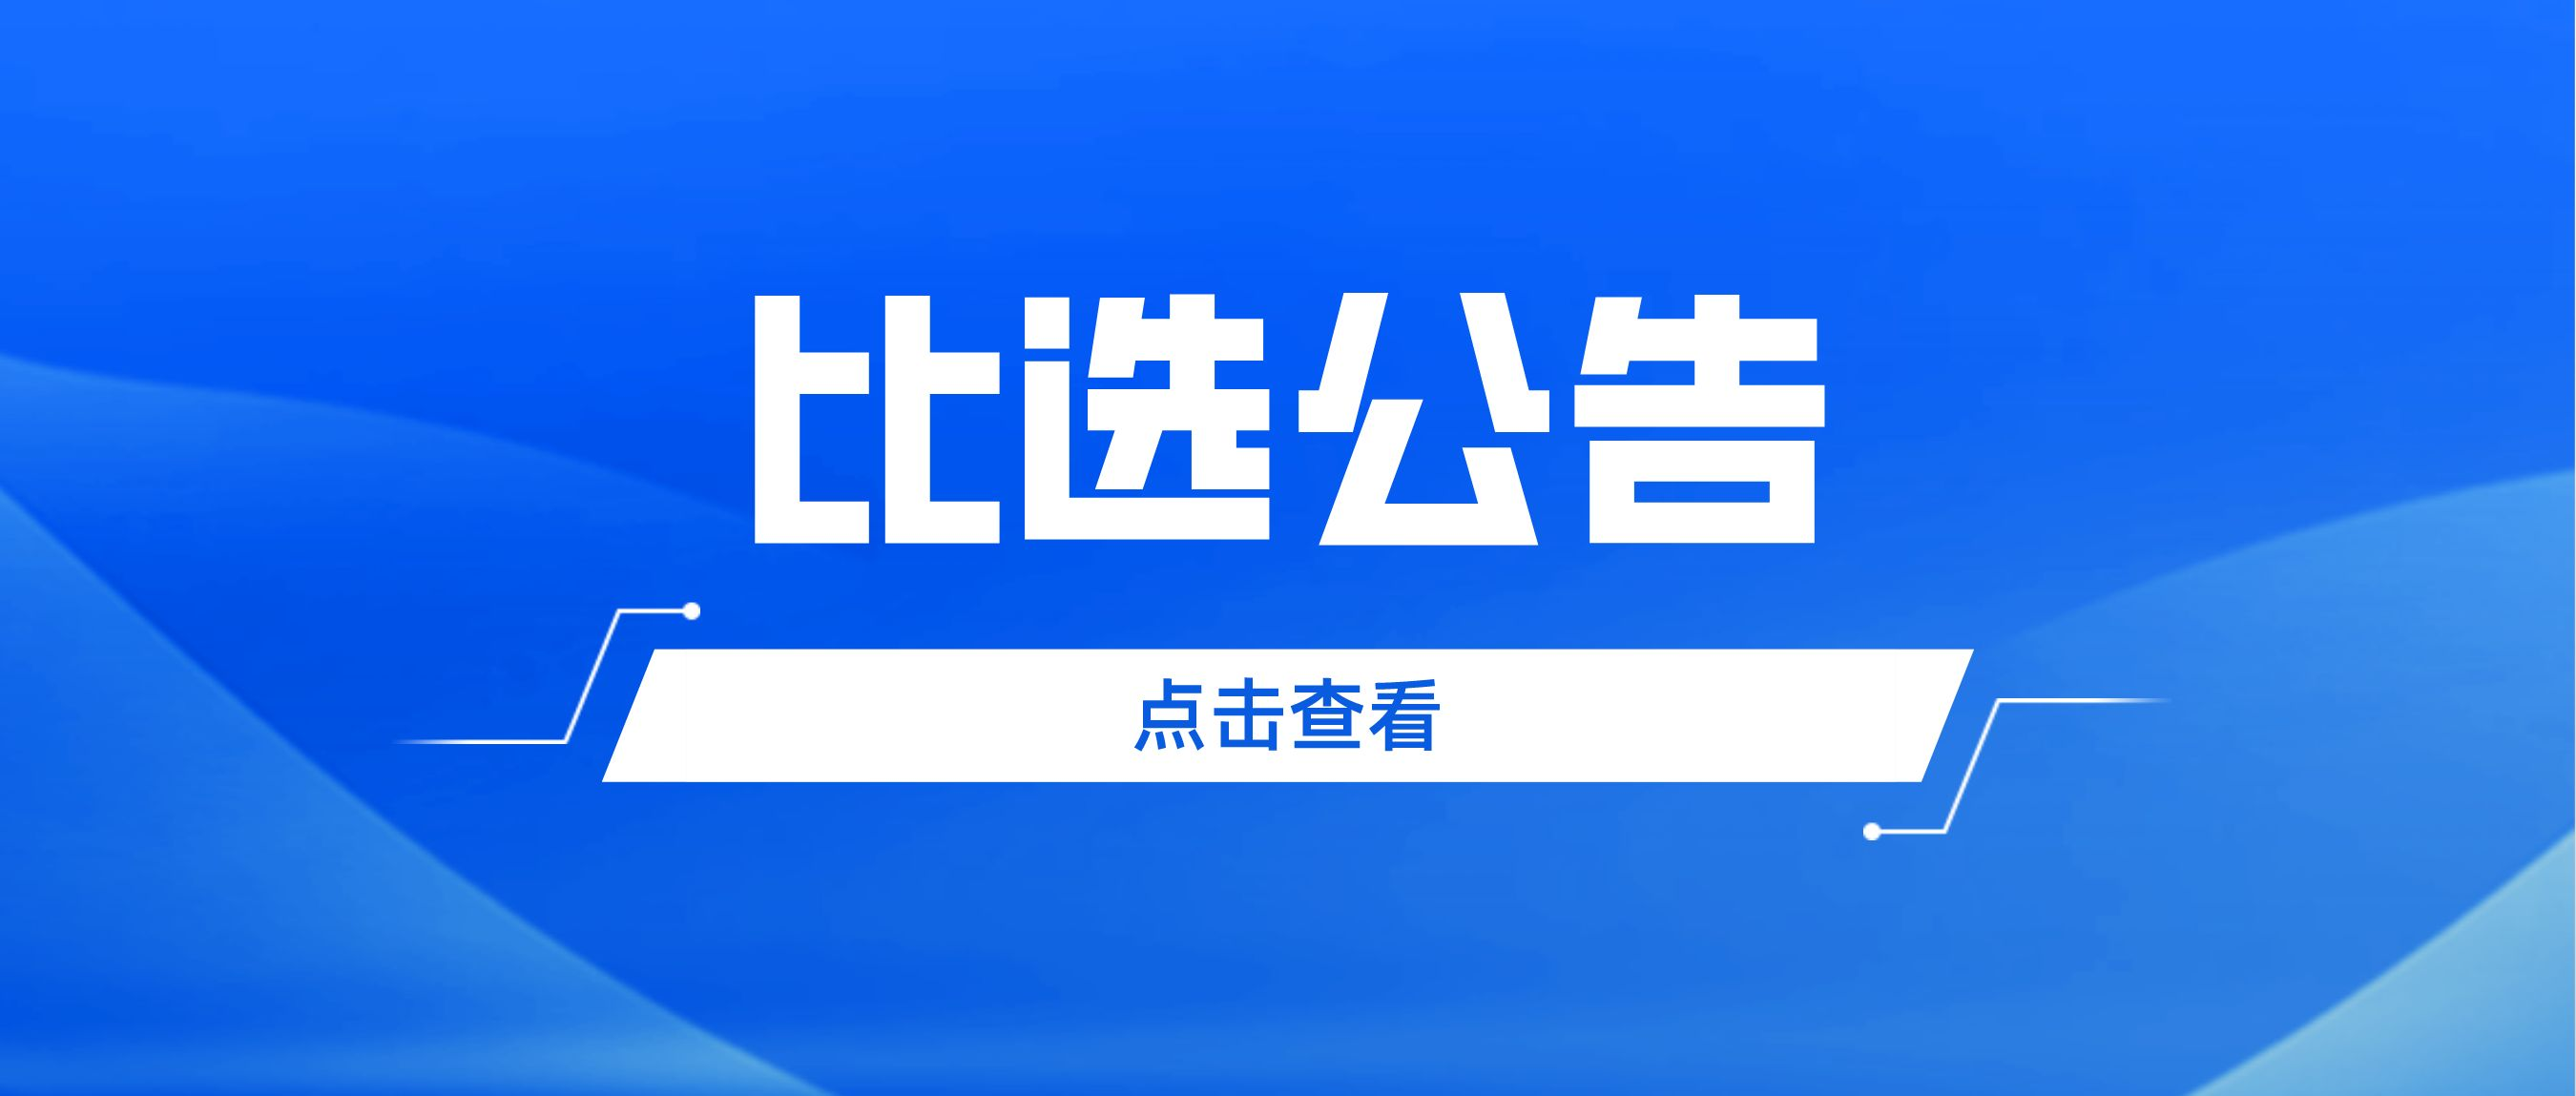 广州市志愿者协会第五届会员大会第一次会议暨换届选举大会、第五届理事会第一次会议 会议场地比选工作的公告